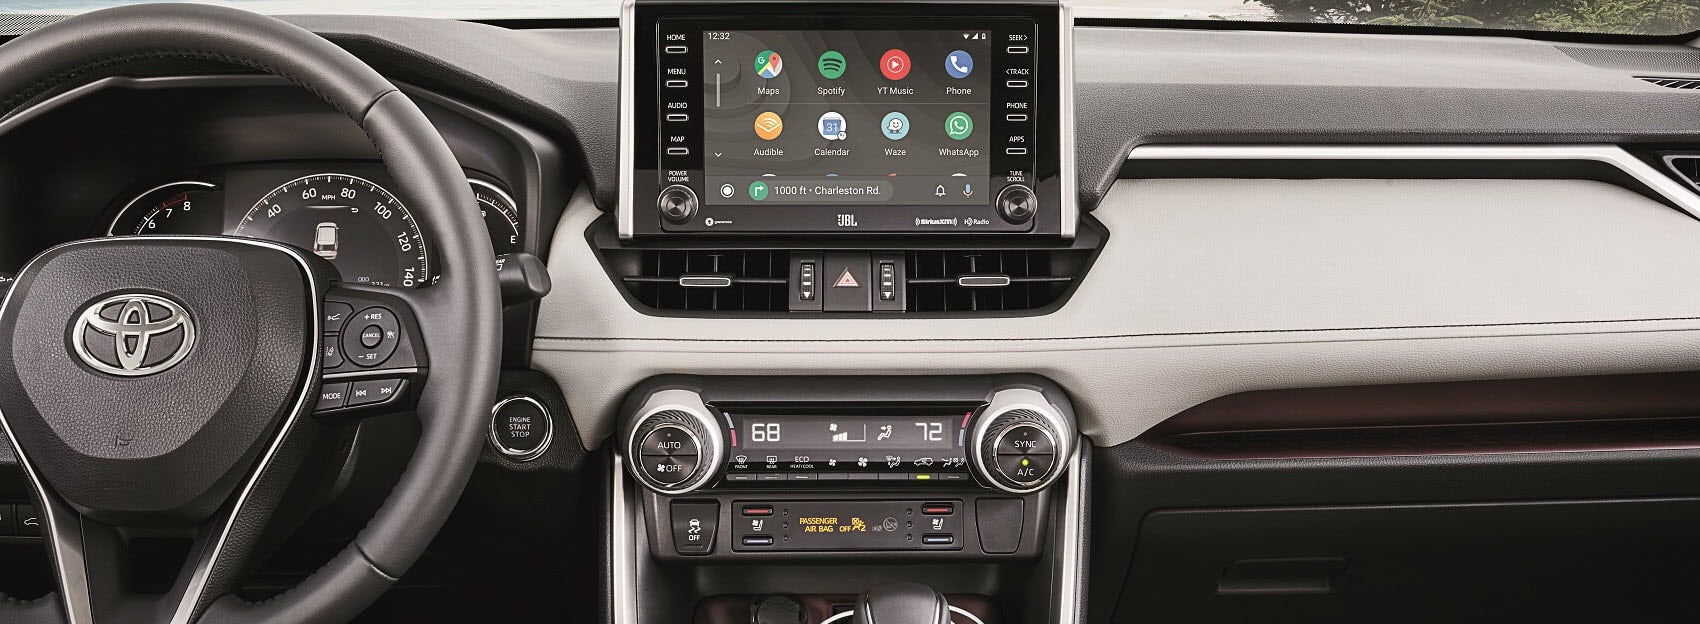 Toyota RAV4 Android Auto™